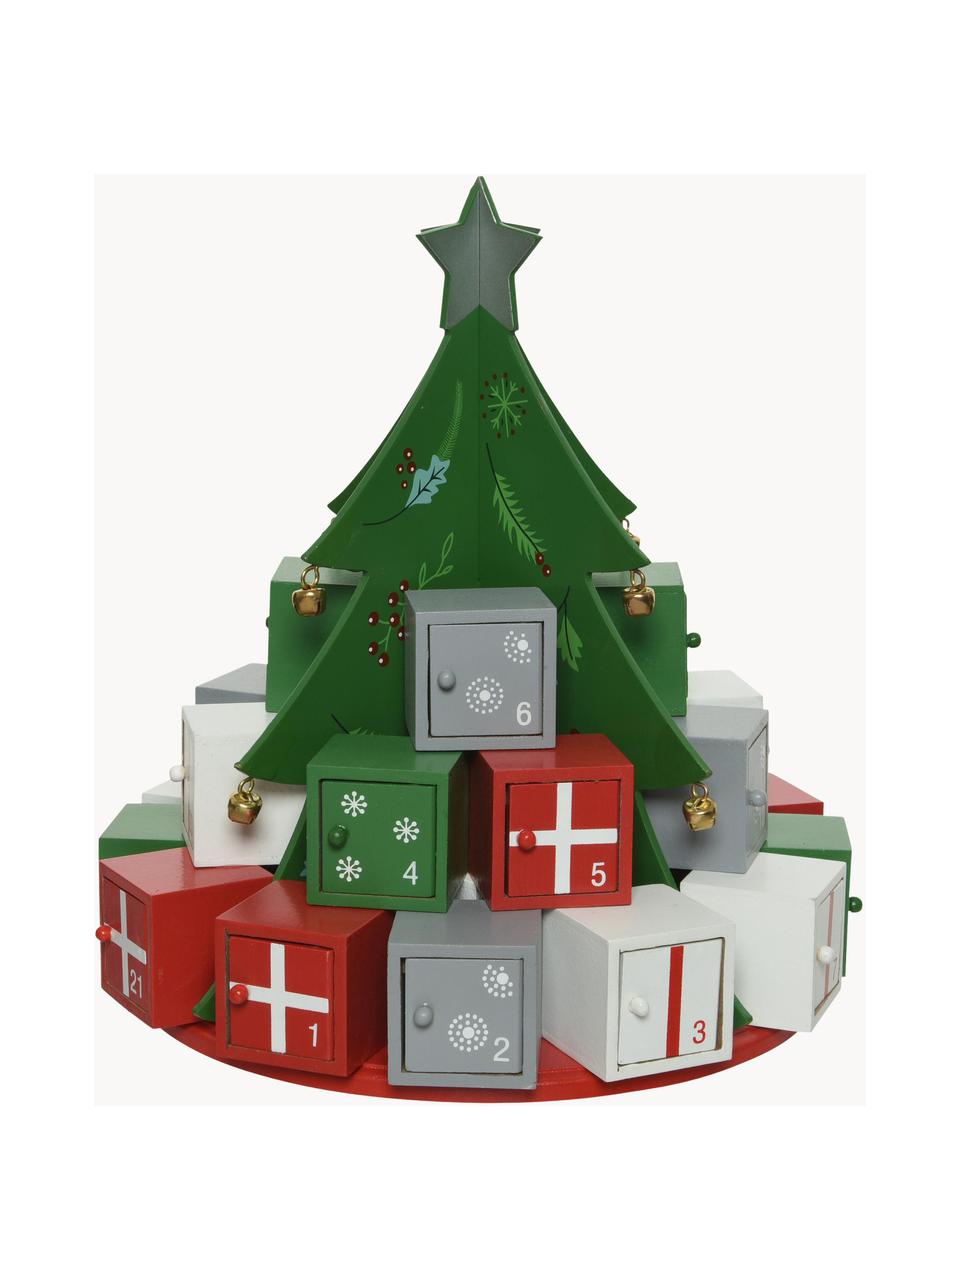 Adventní kalendář Tree, V 29 cm, Dřevovláknitá deska střední hustoty, potažená, Zelená, červená, bílá, šedá, Ø 26 cm, V 29 cm